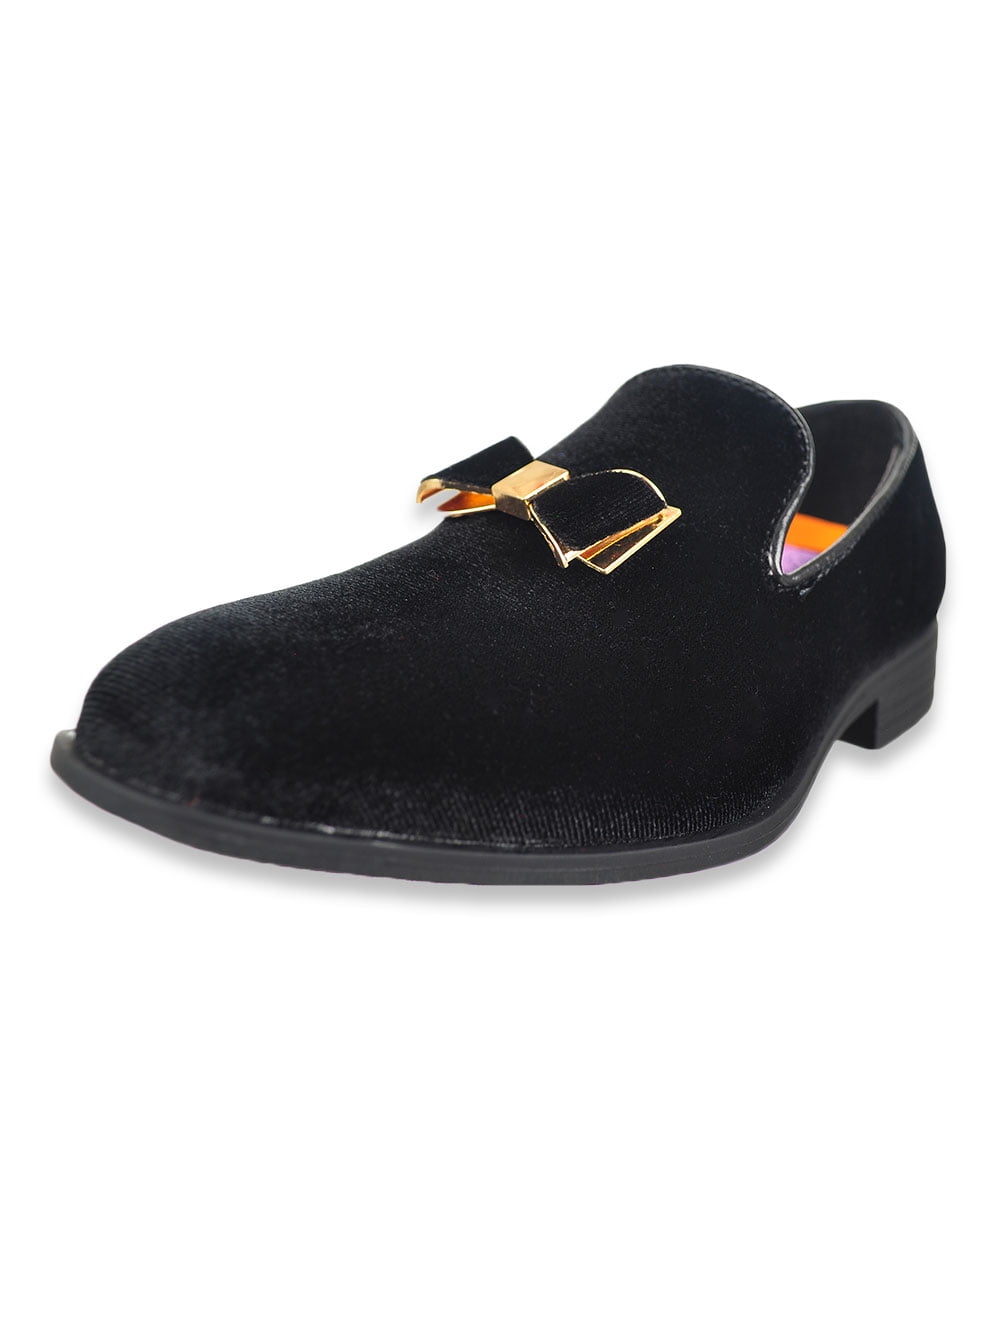 Andanines Boys C78320 Black Leather Slip On Loafer Dress Shoe 